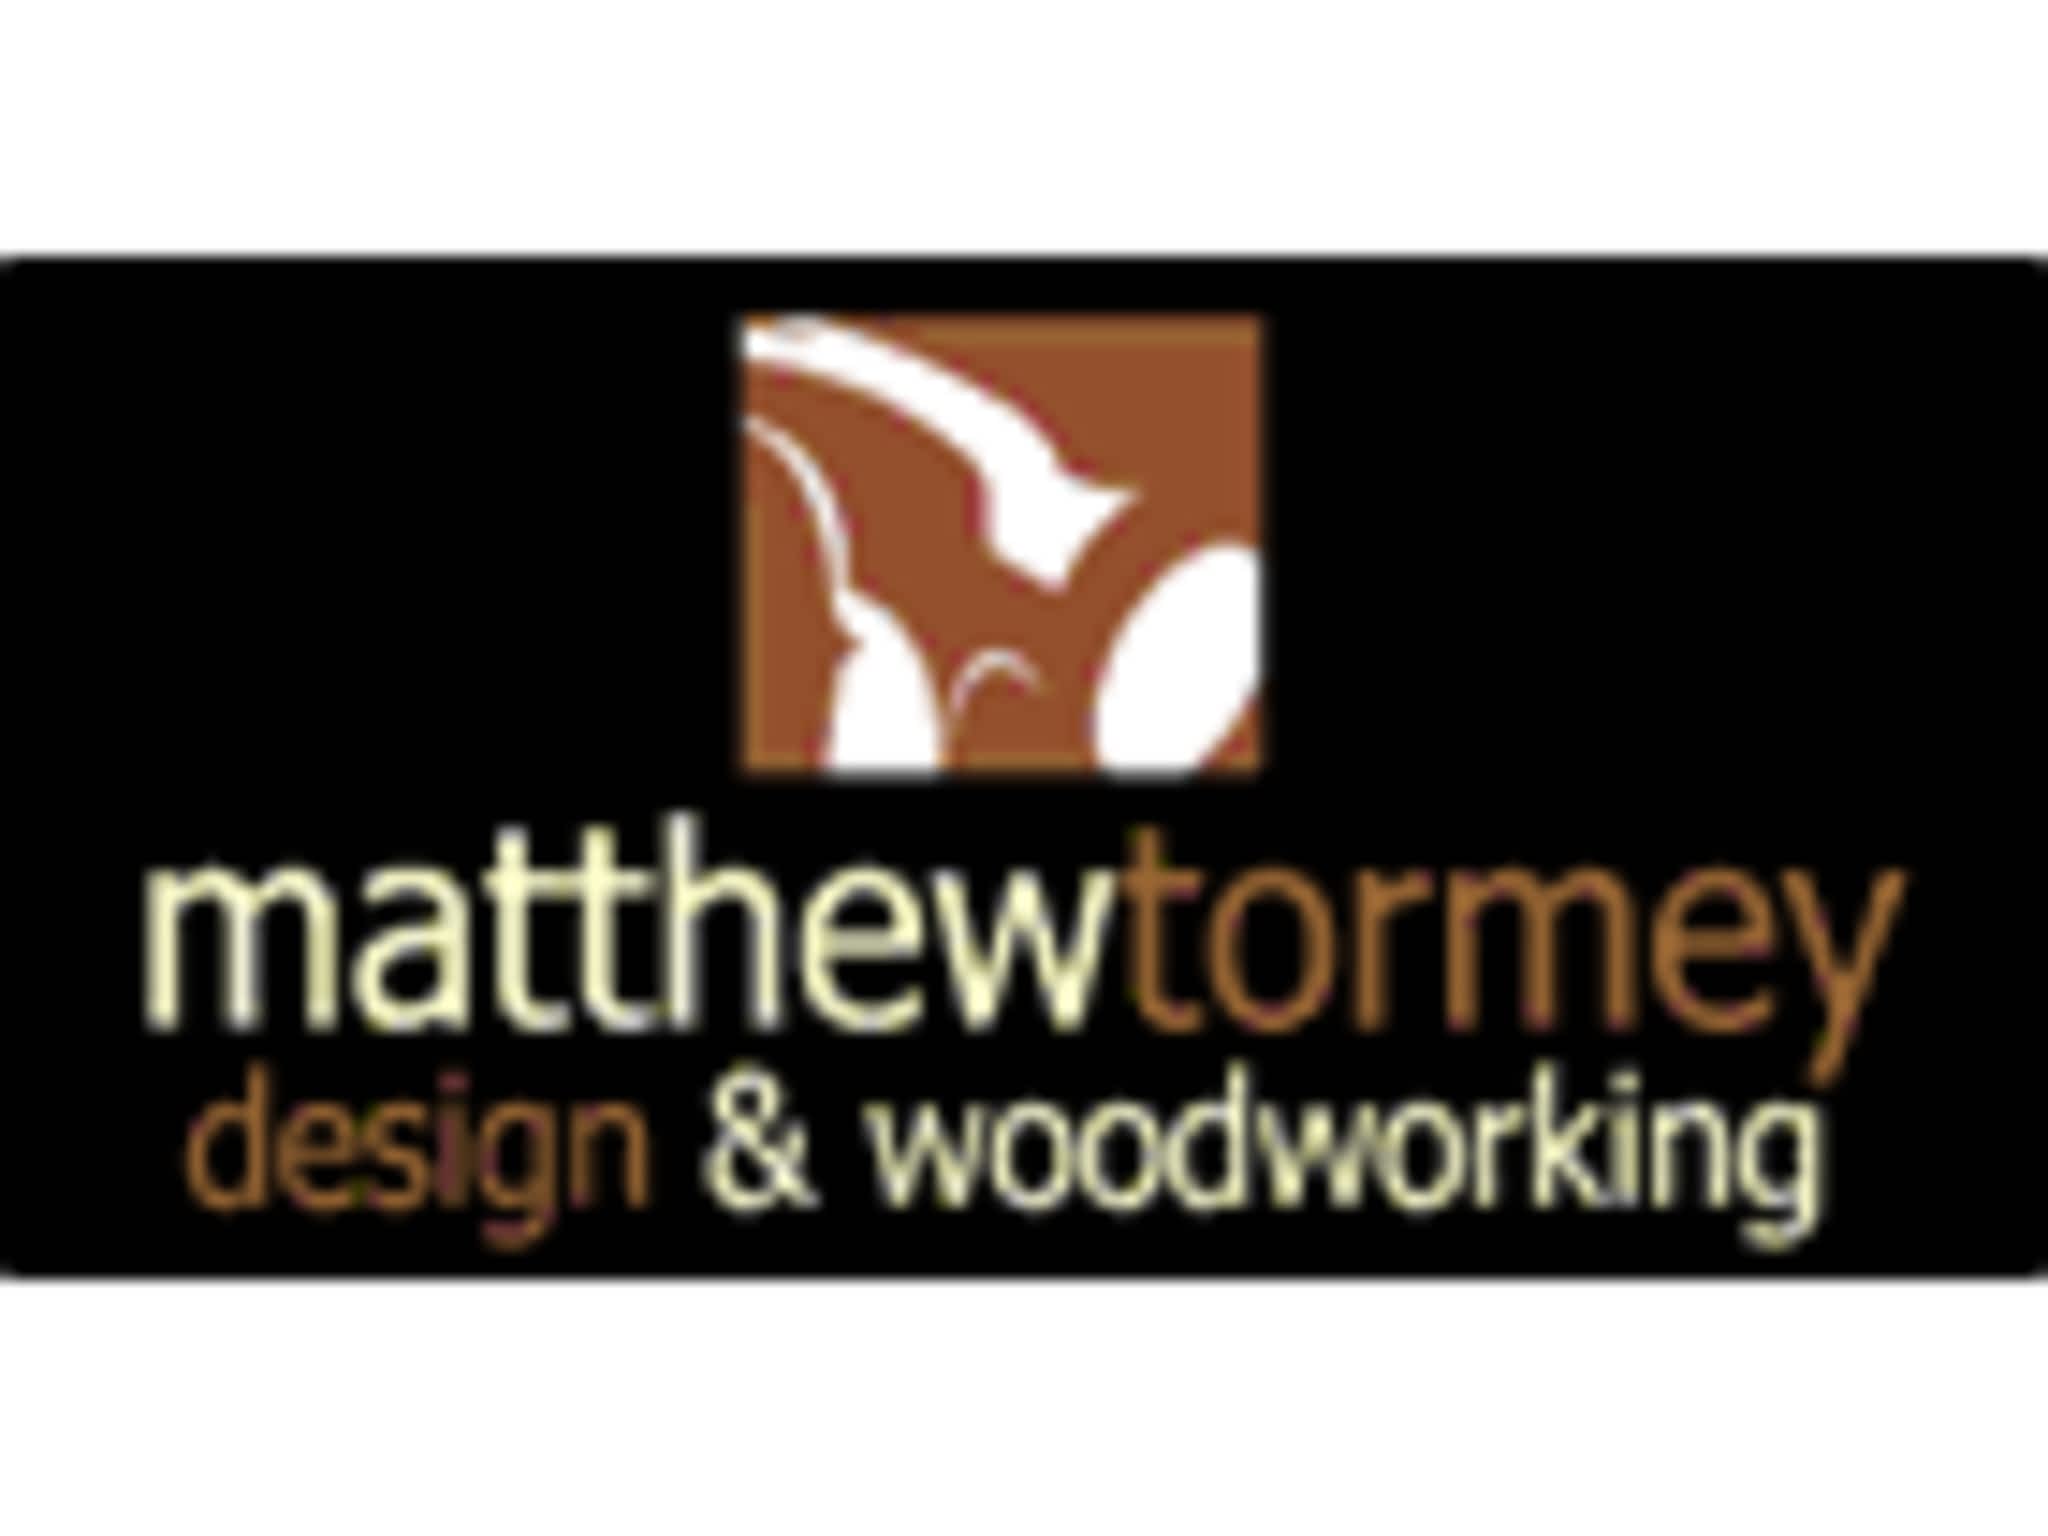 photo Matthew Tormey Design & Woodworking